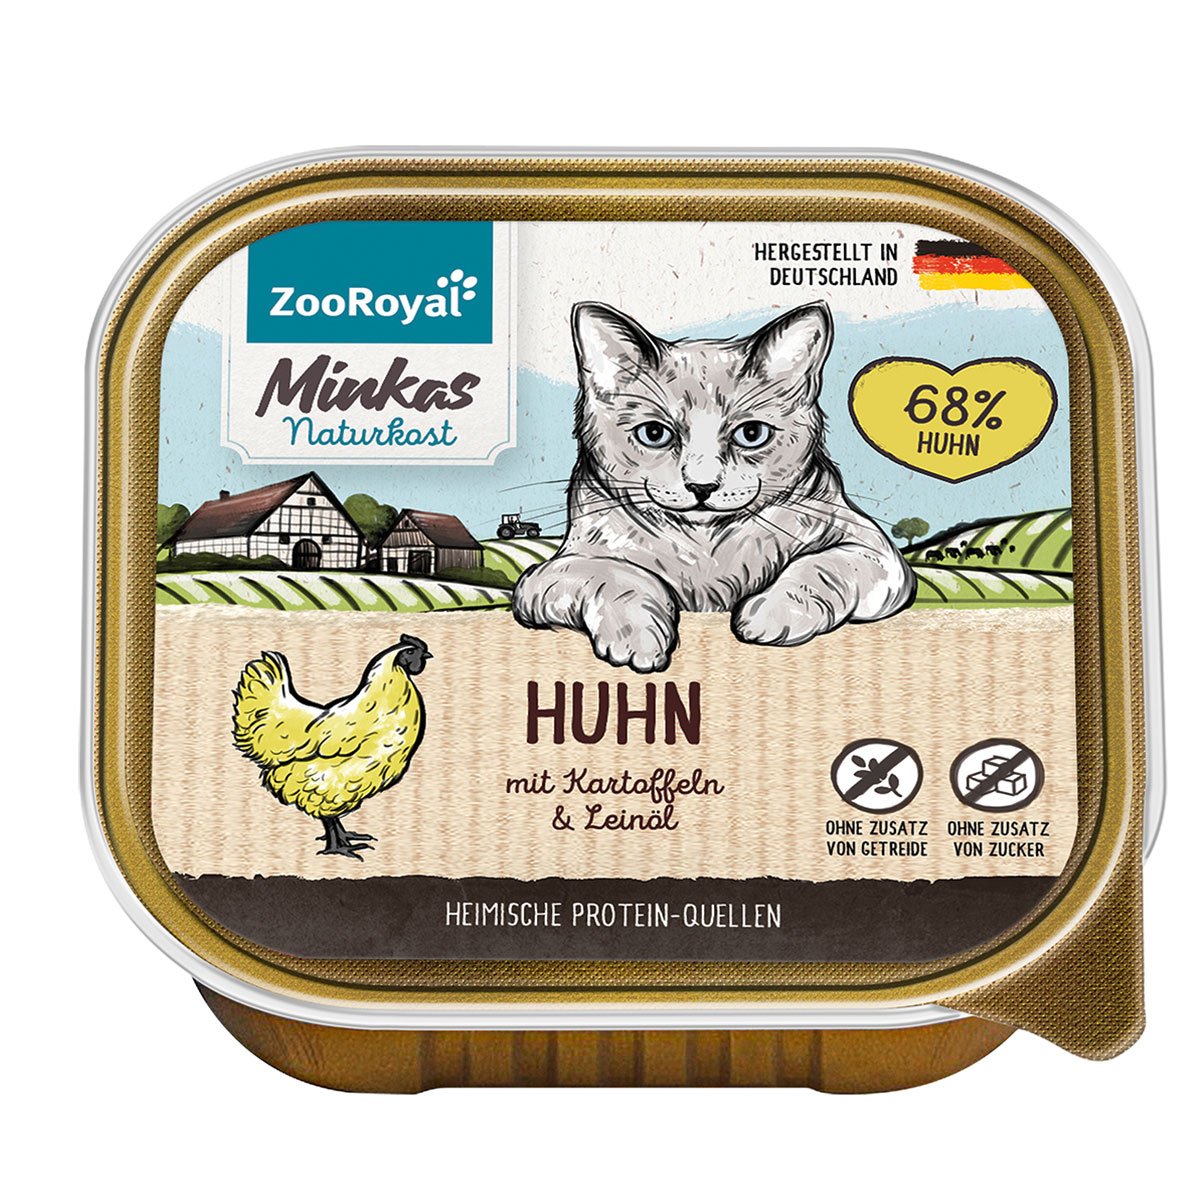 ZooRoyal Minkas Naturkost Adult Huhn mit Kartoffeln & Leinöl 16x100g